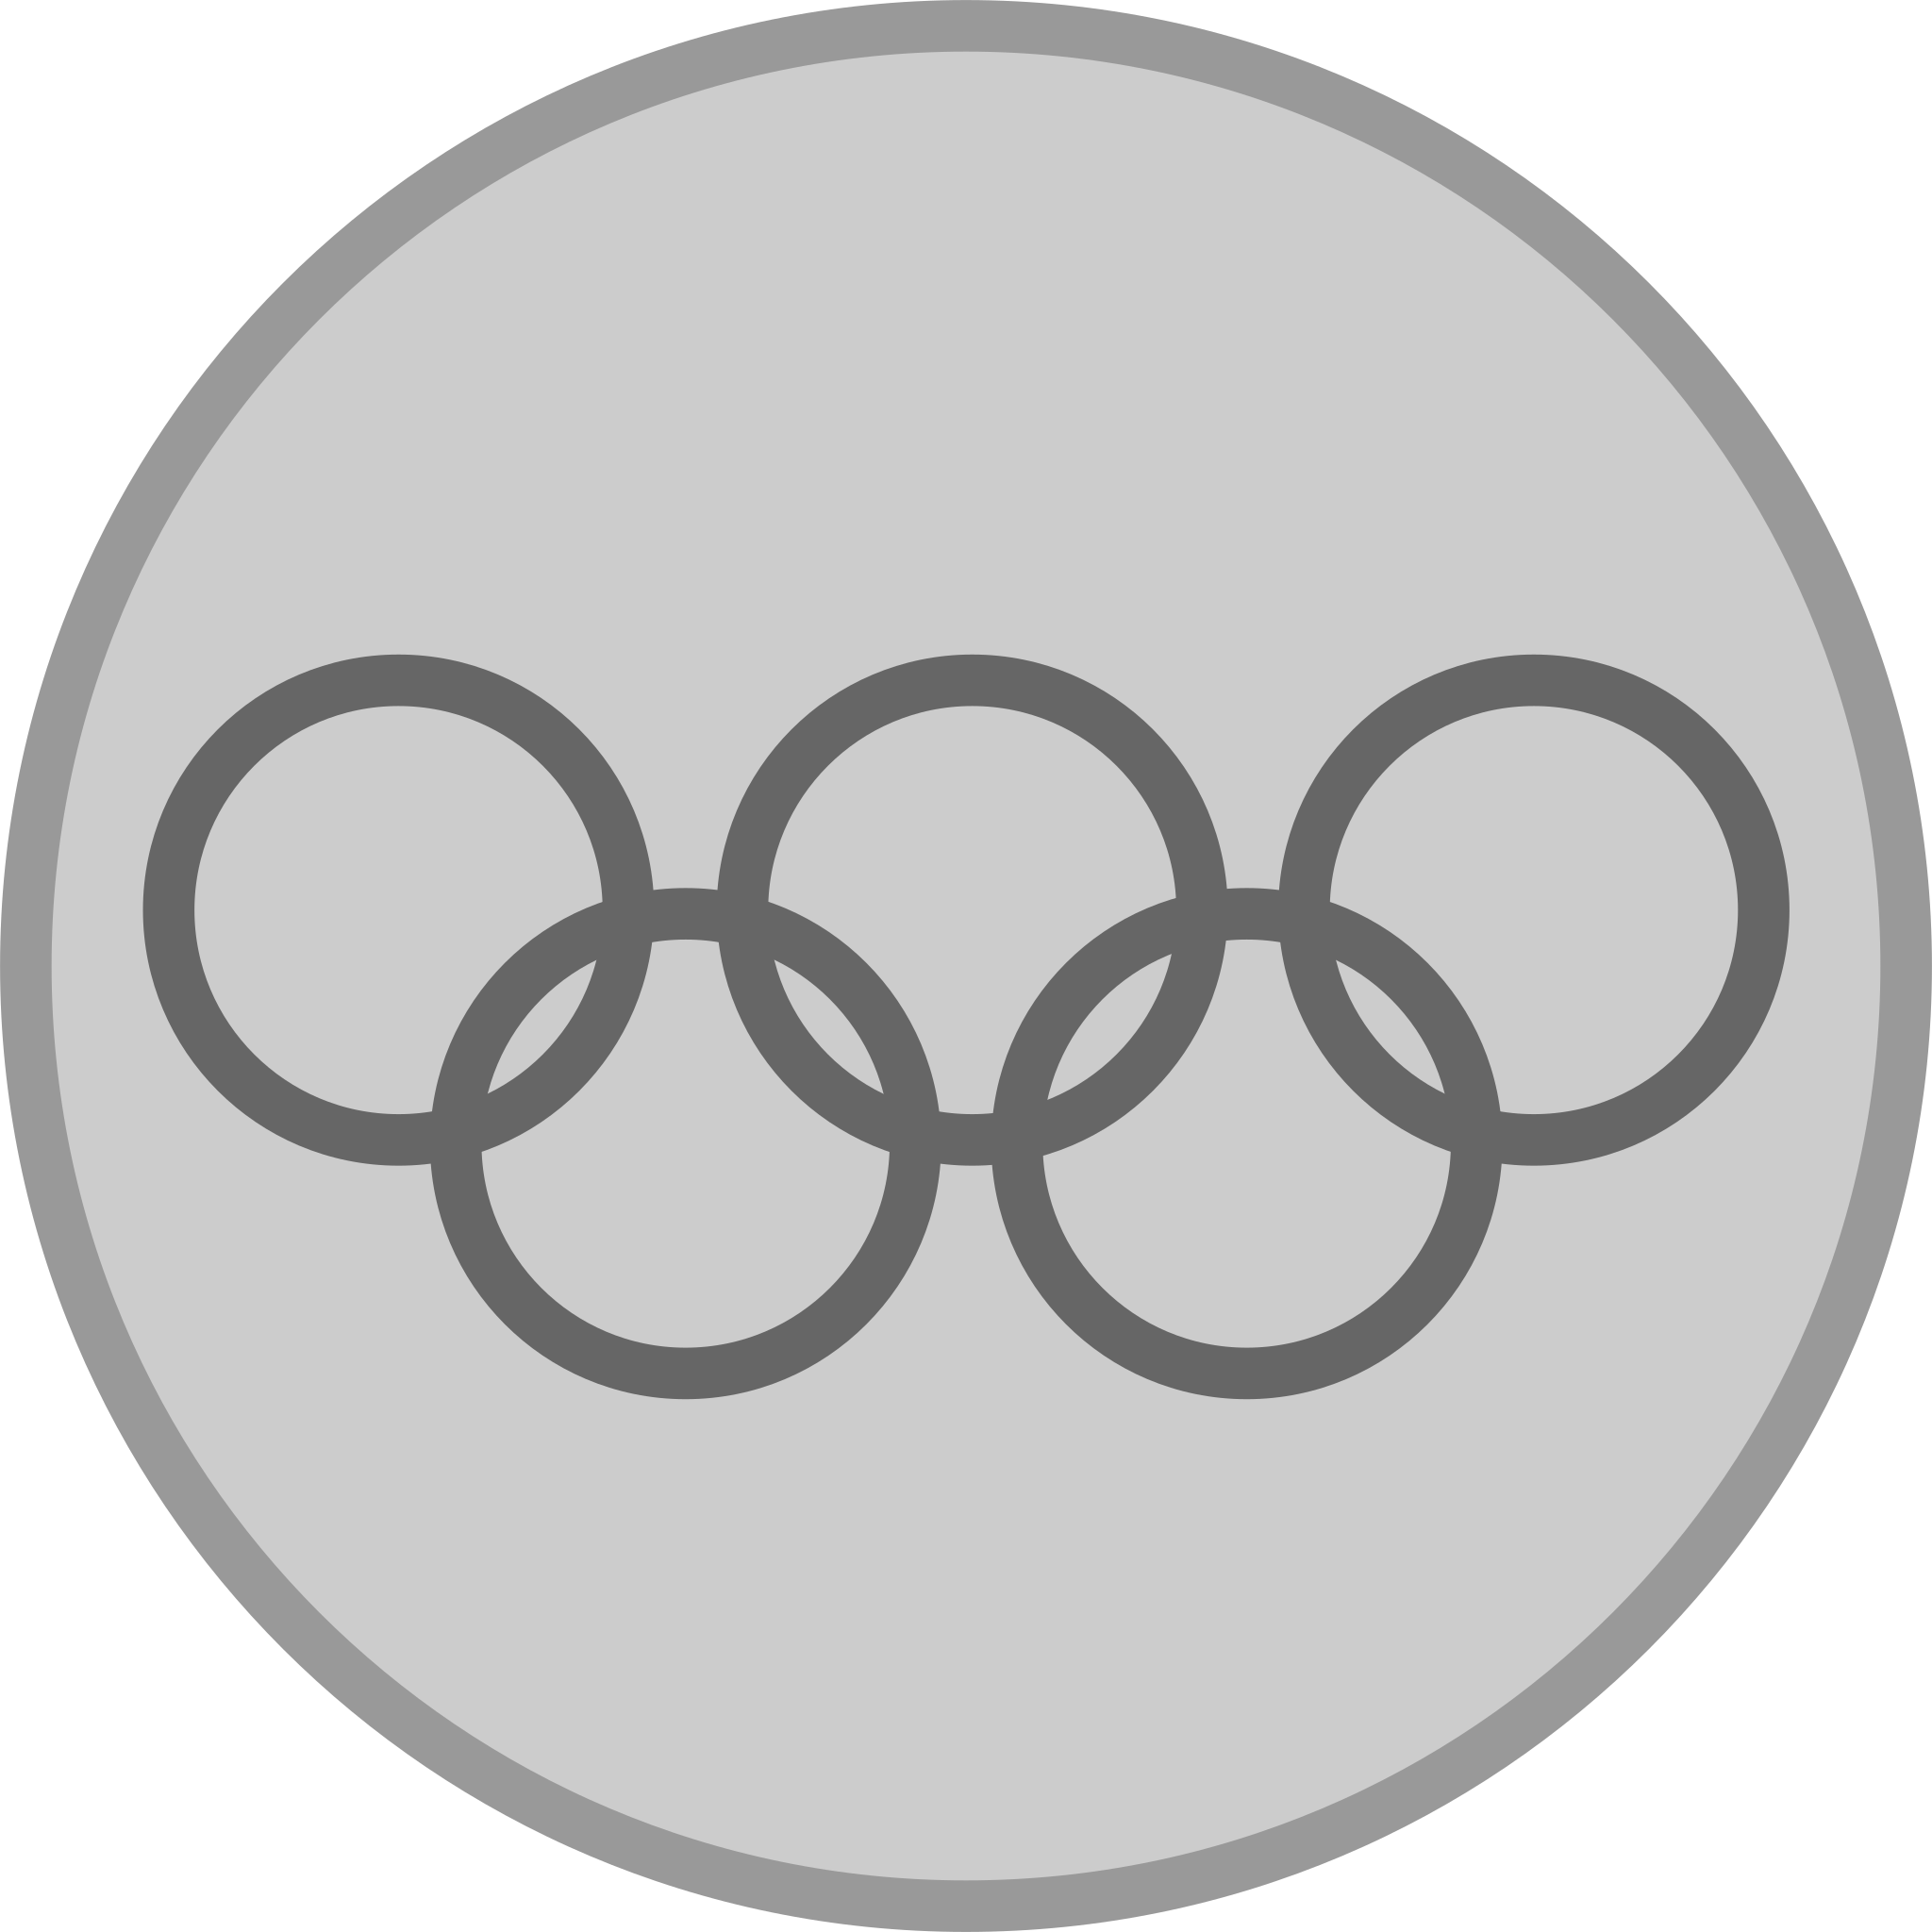 Súbor:Silver medal.svg - Wikipédia